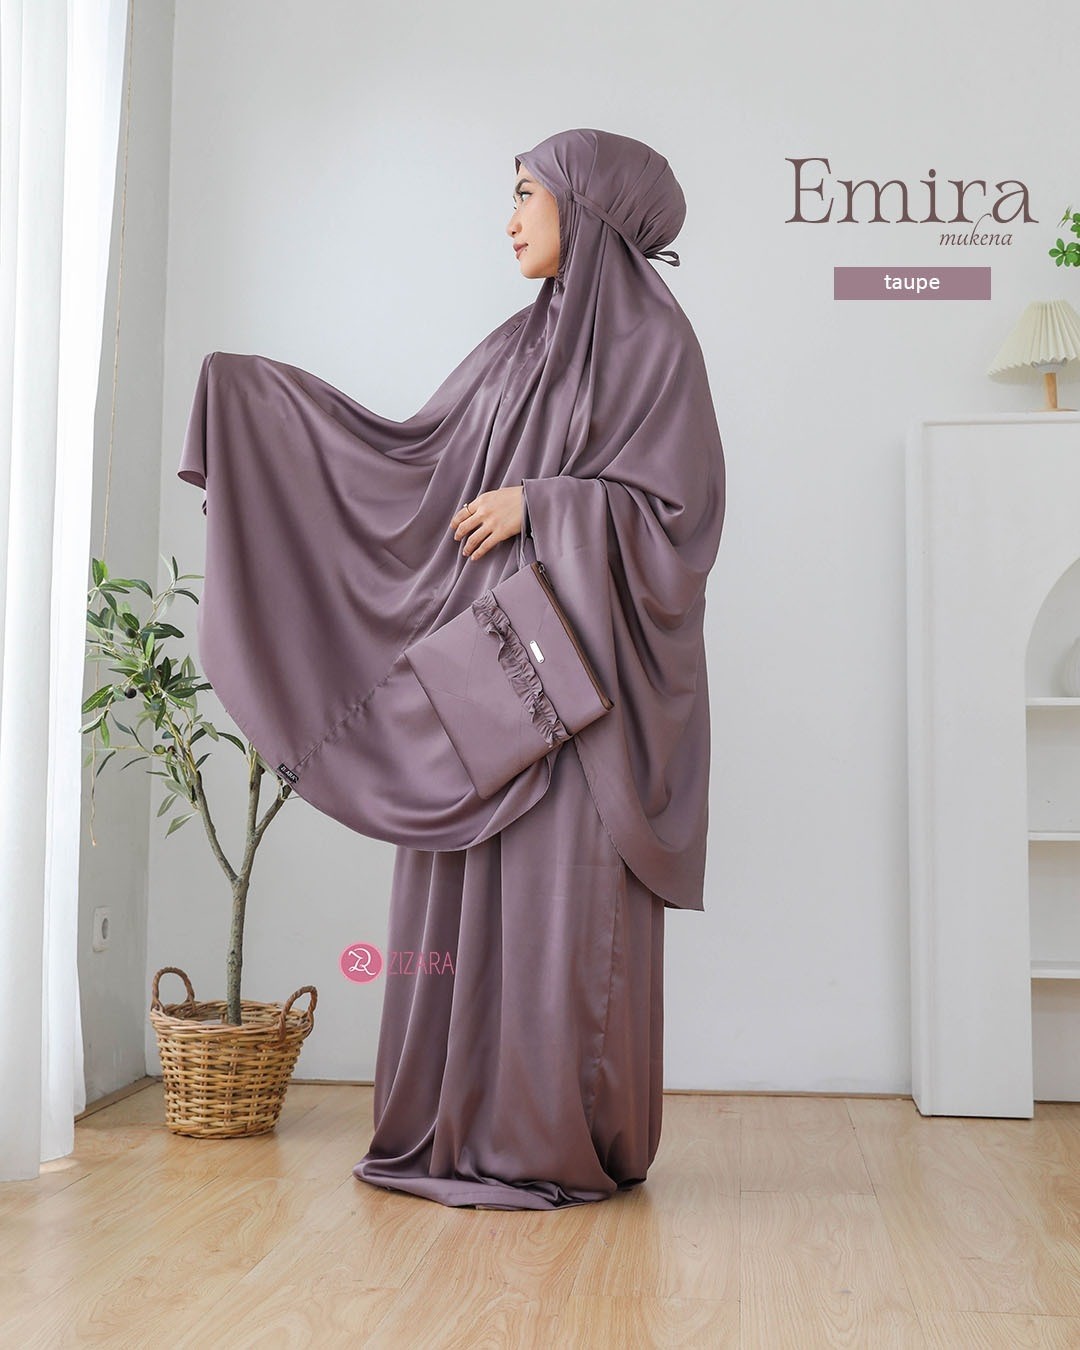 LINE_ALBUM_Emira, Elma_230219_39